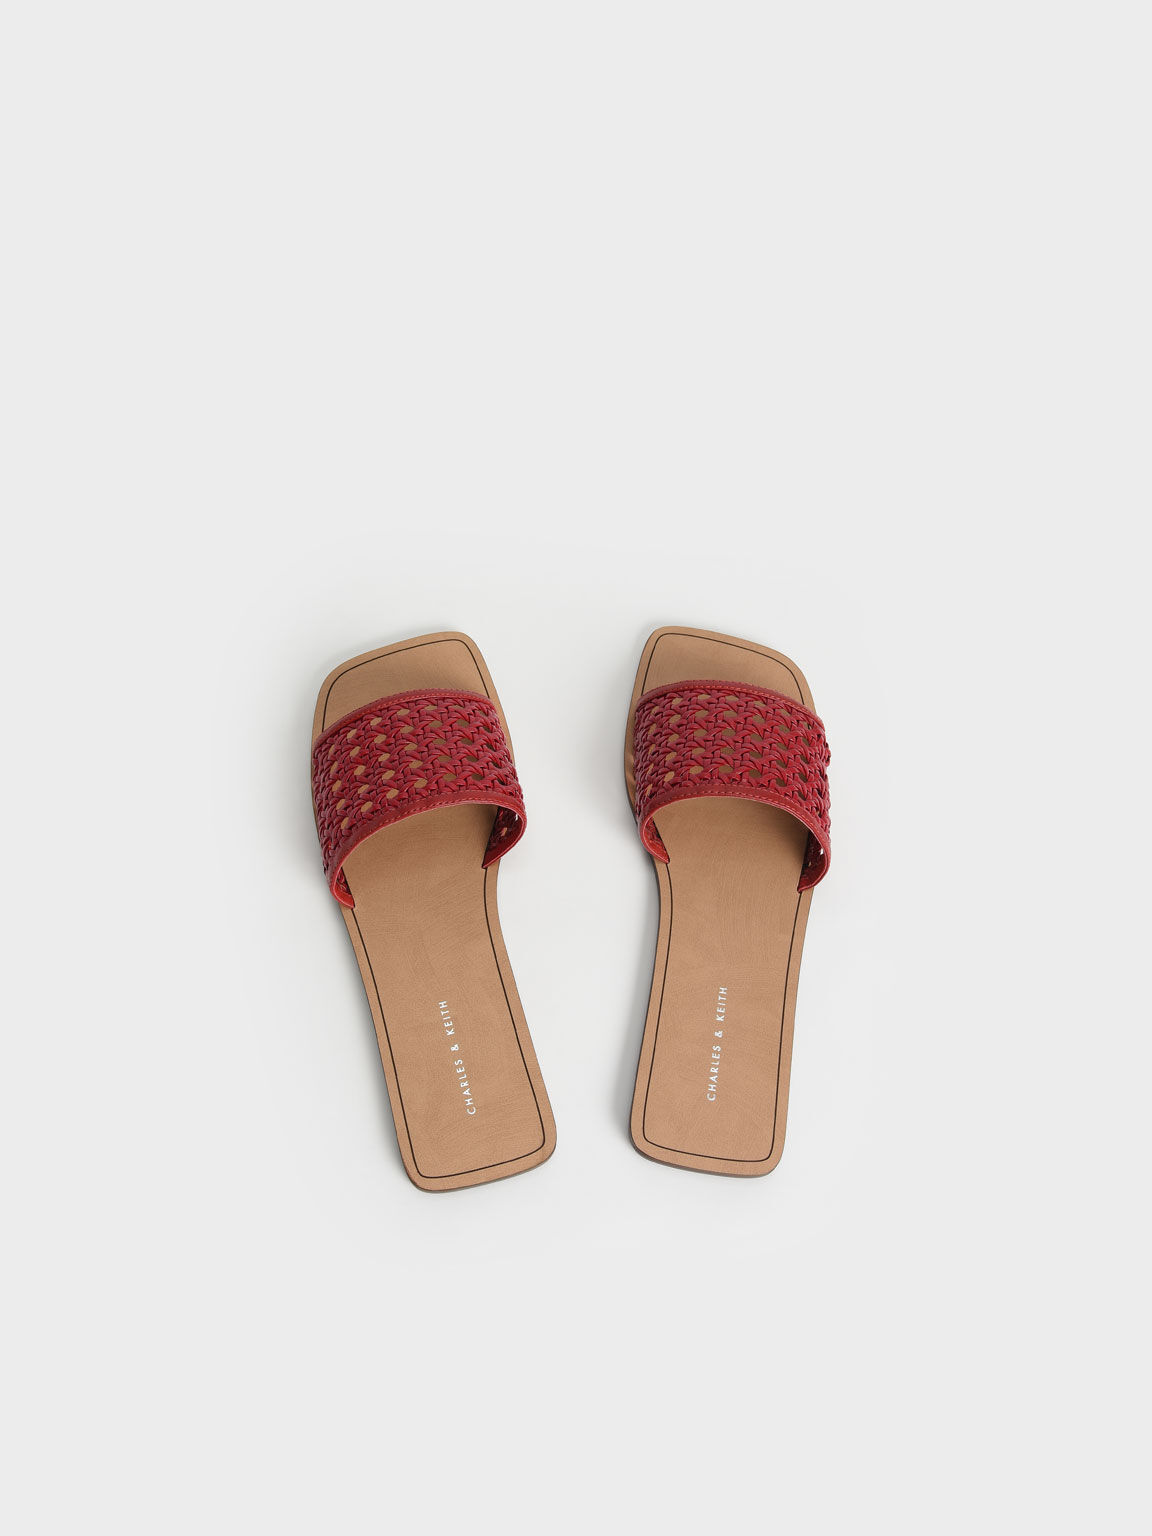 Woven Slide Sandals, Red, hi-res